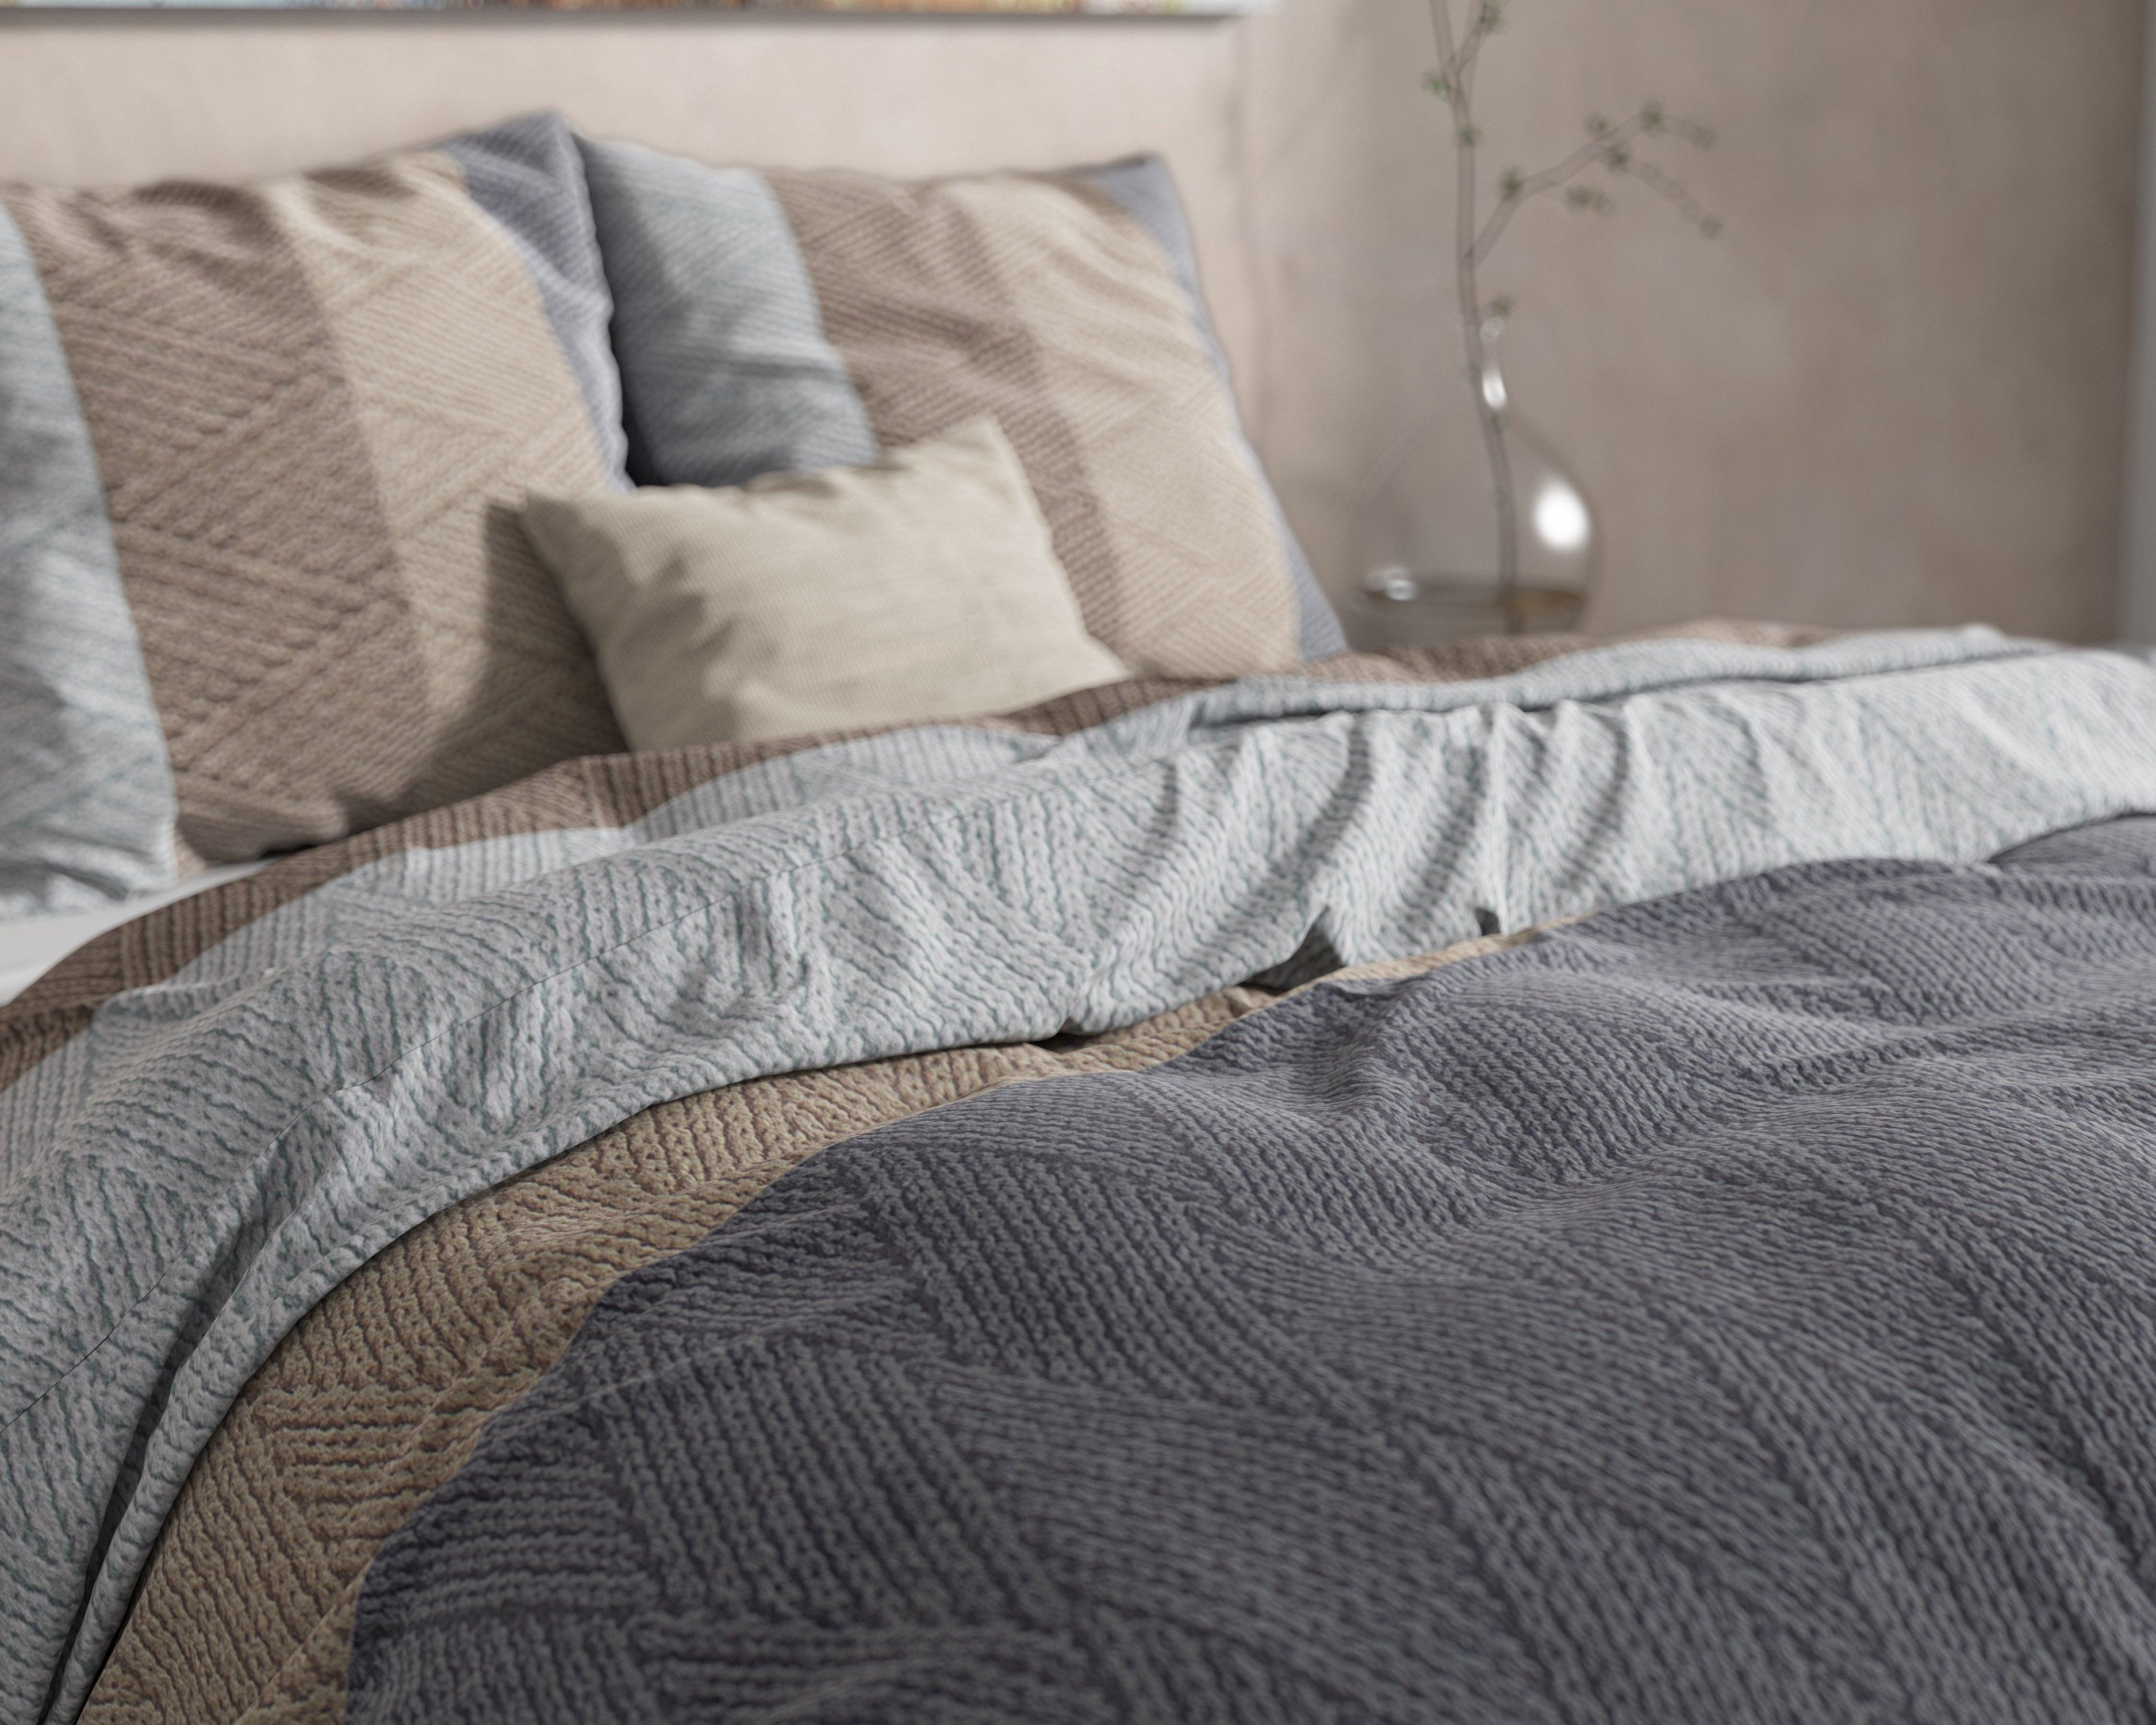 Een slaapkamer die warmte en comfort uitstraalt met het Knitty Natural Taupe/Grey dekbedovertrek